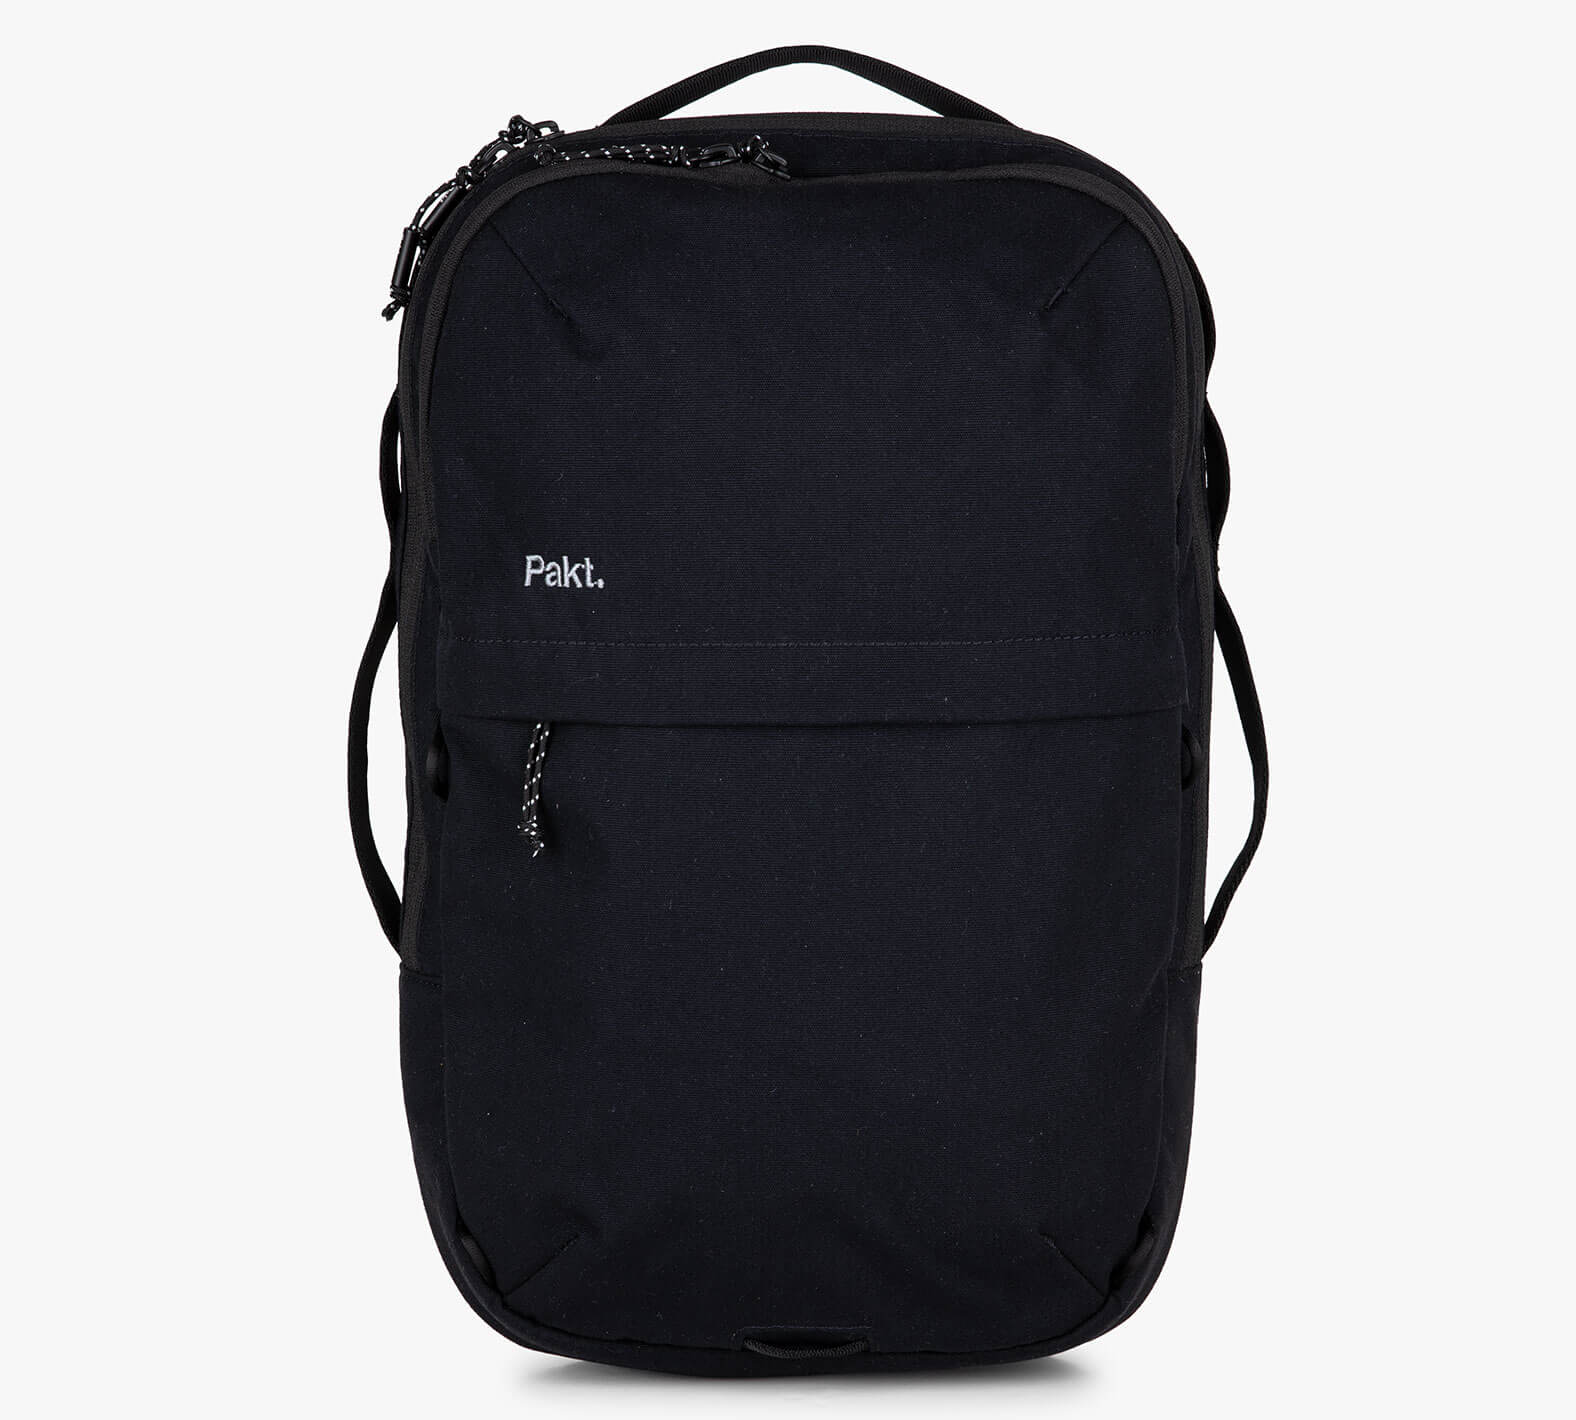 Sling Backpack black